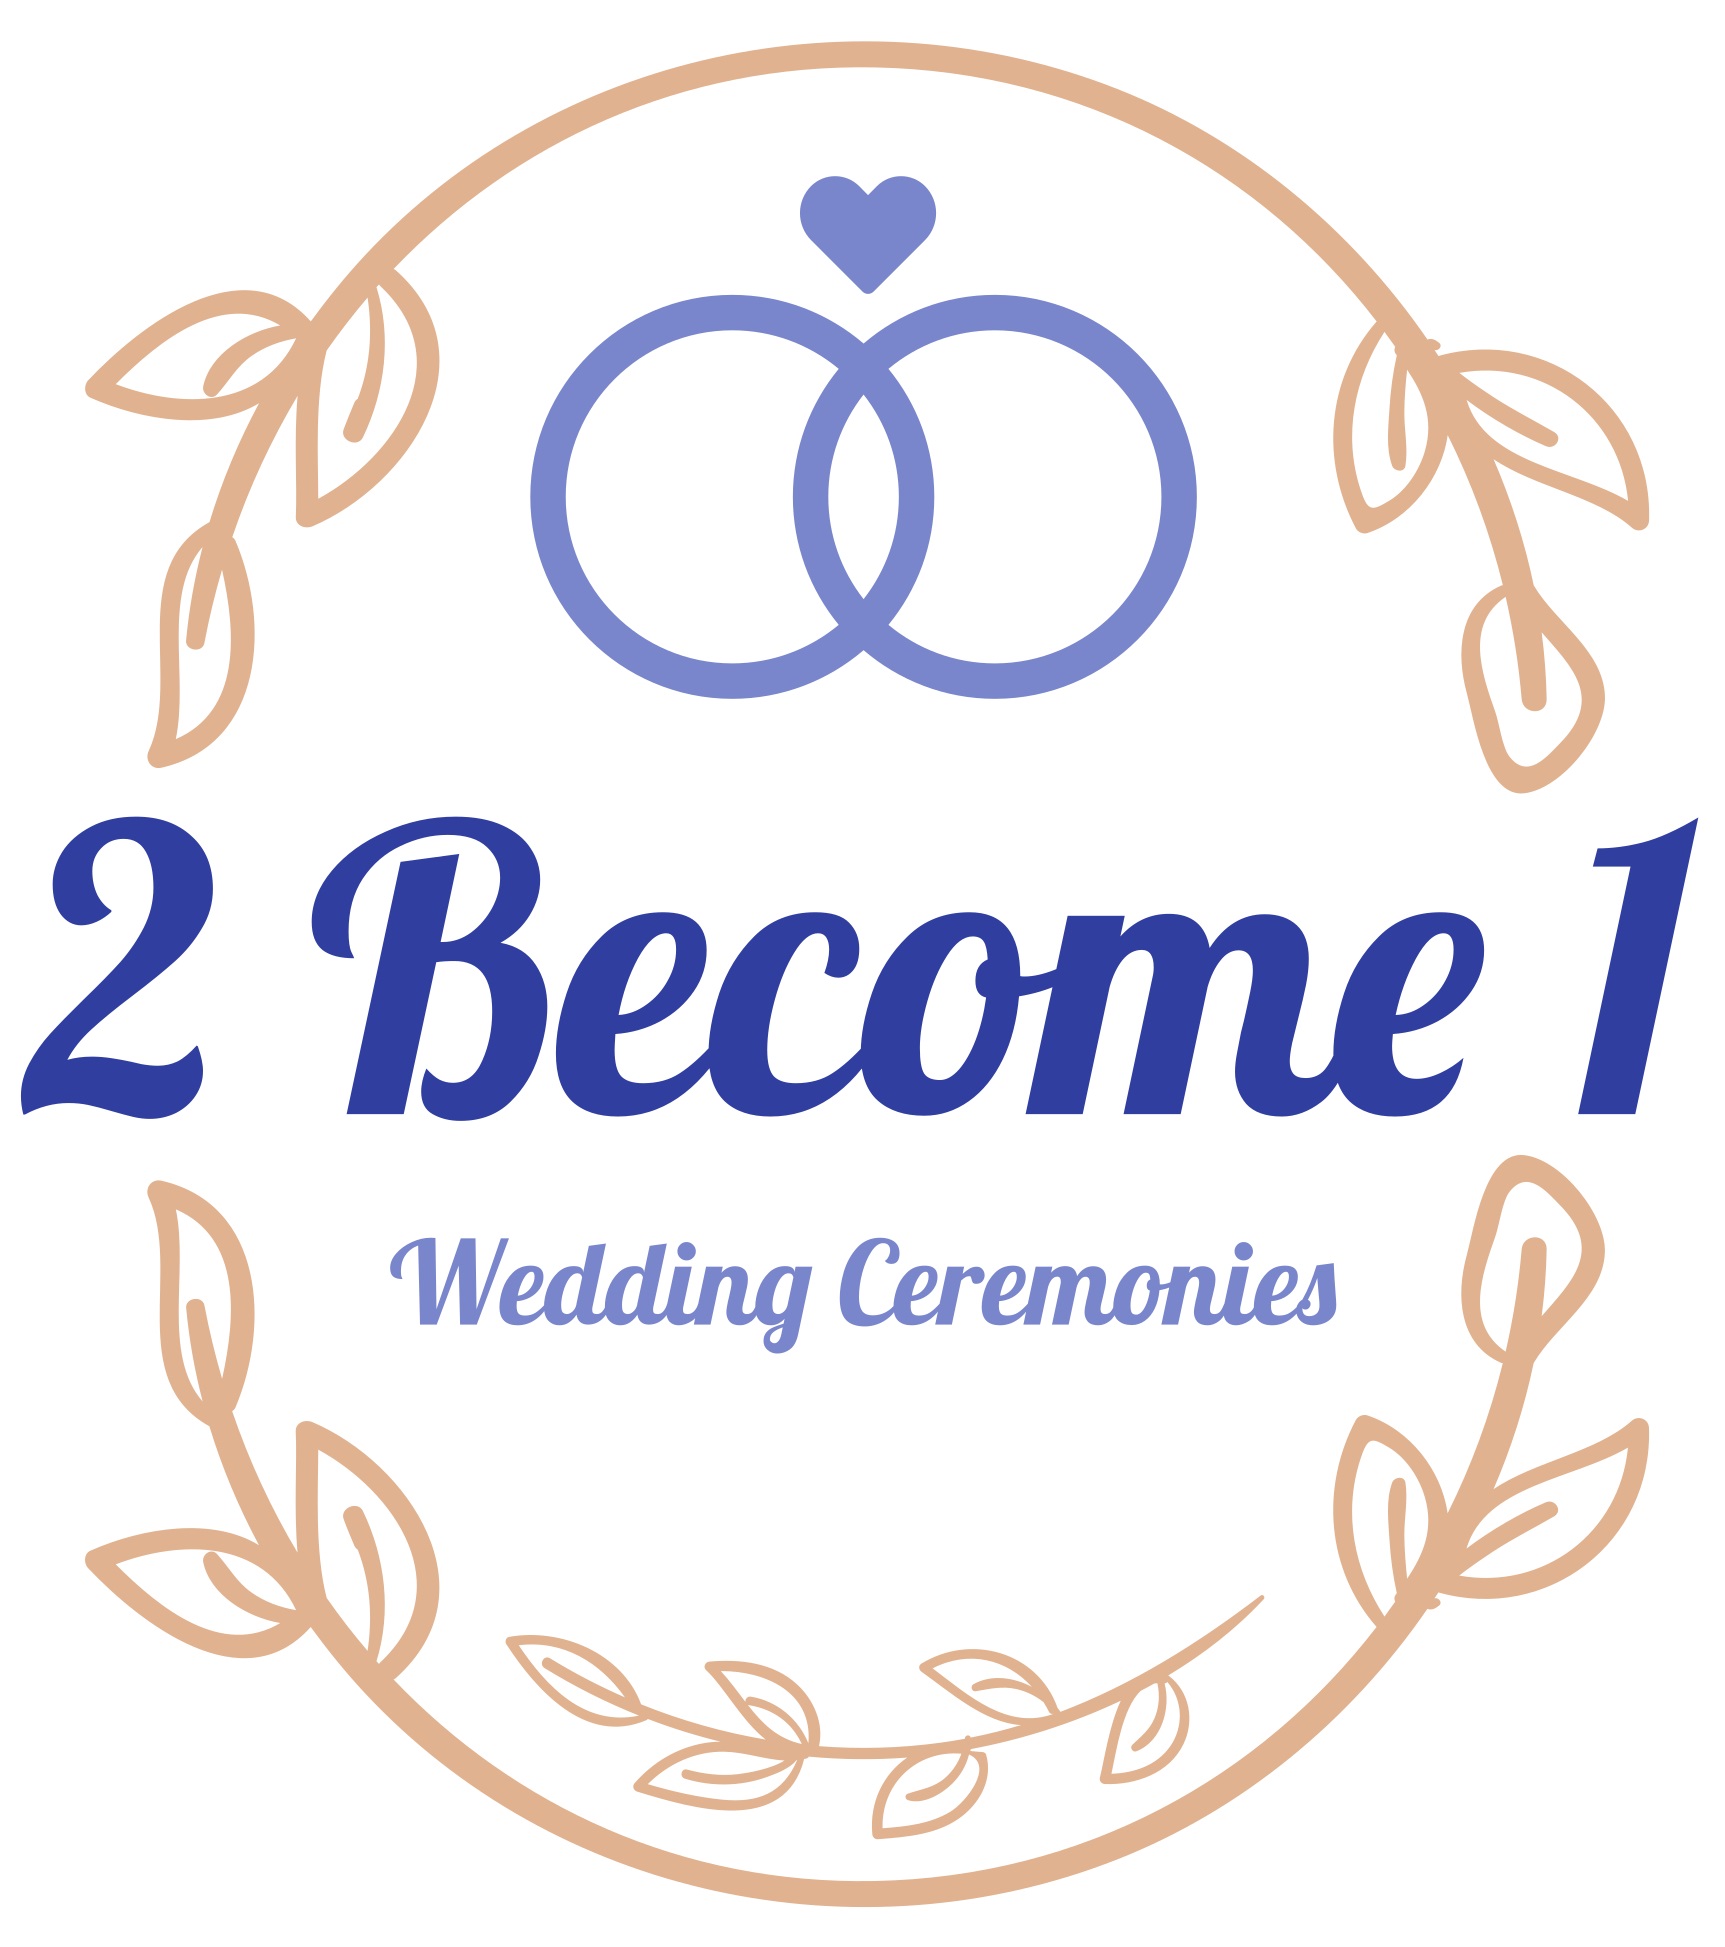 2 Become 1 Wedding Ceremonies